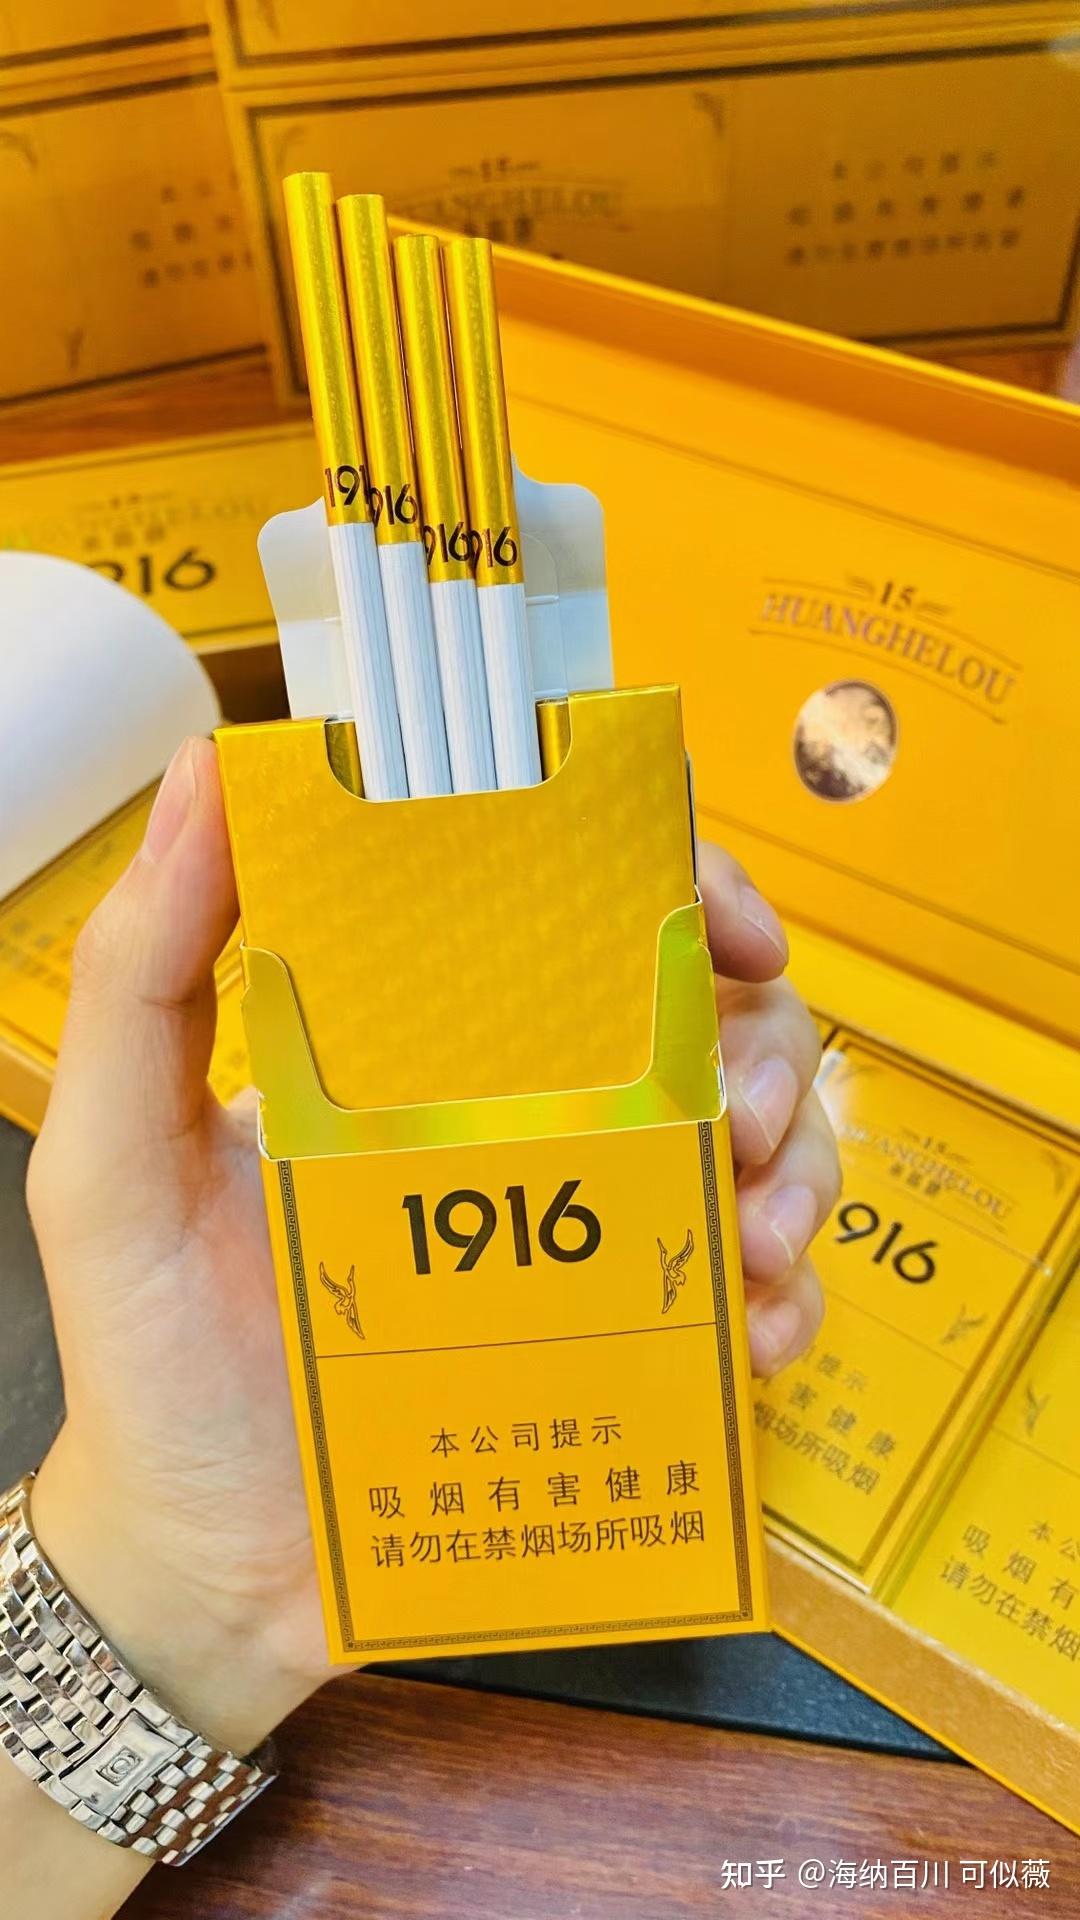 【山西烟】山西人收藏上世纪的香烟200多种 很多都没见过 看了回忆心酸